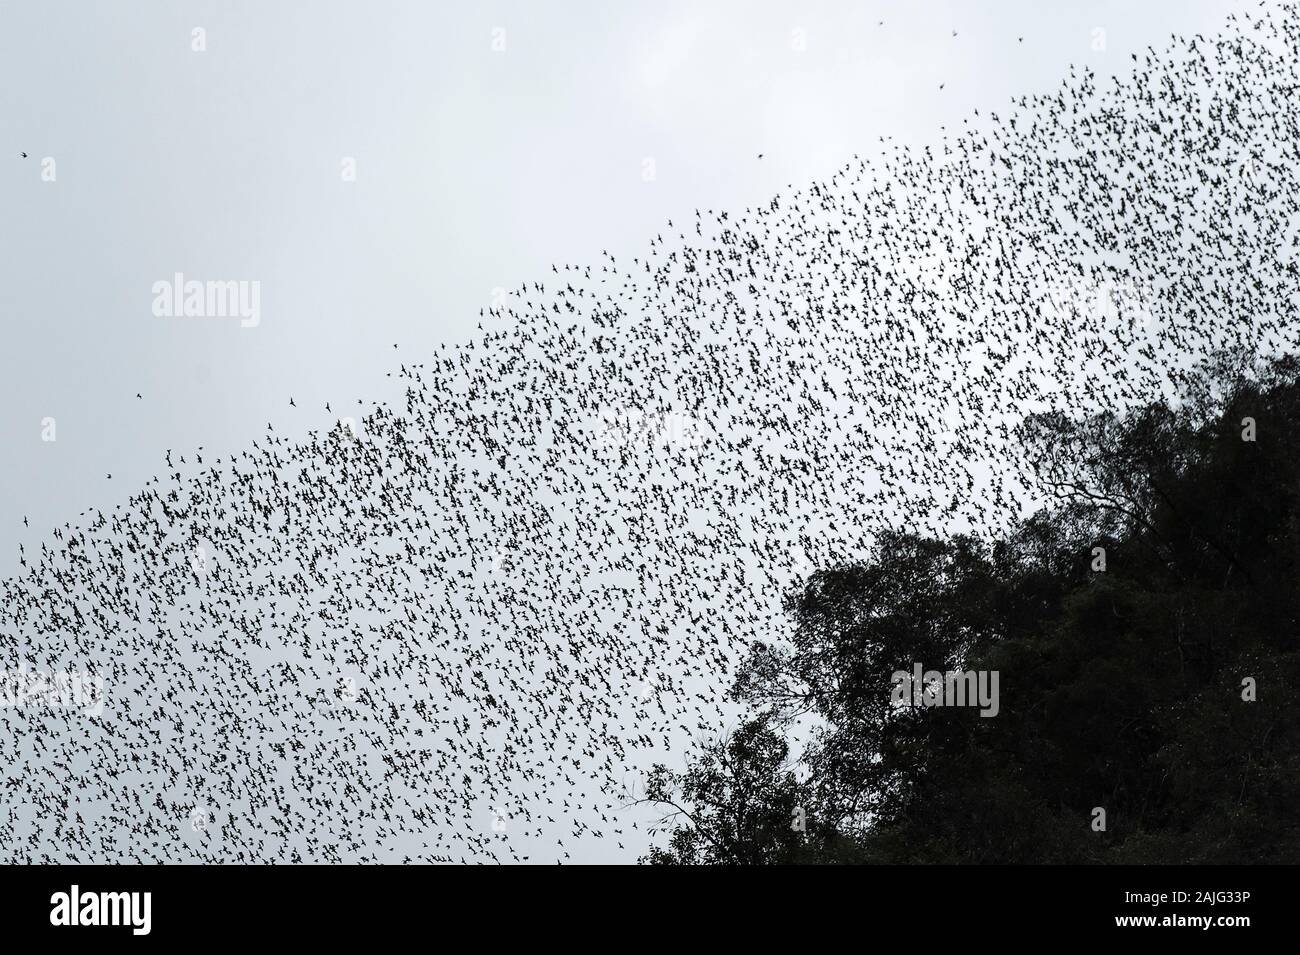 Millionen von Fledermäusen, schwärmen von der Deer Cave zu ihren Futterplätzen zu Kopf, Gunung Mulu National Park, Sarawak, Borneo, Malaysia Stockfoto